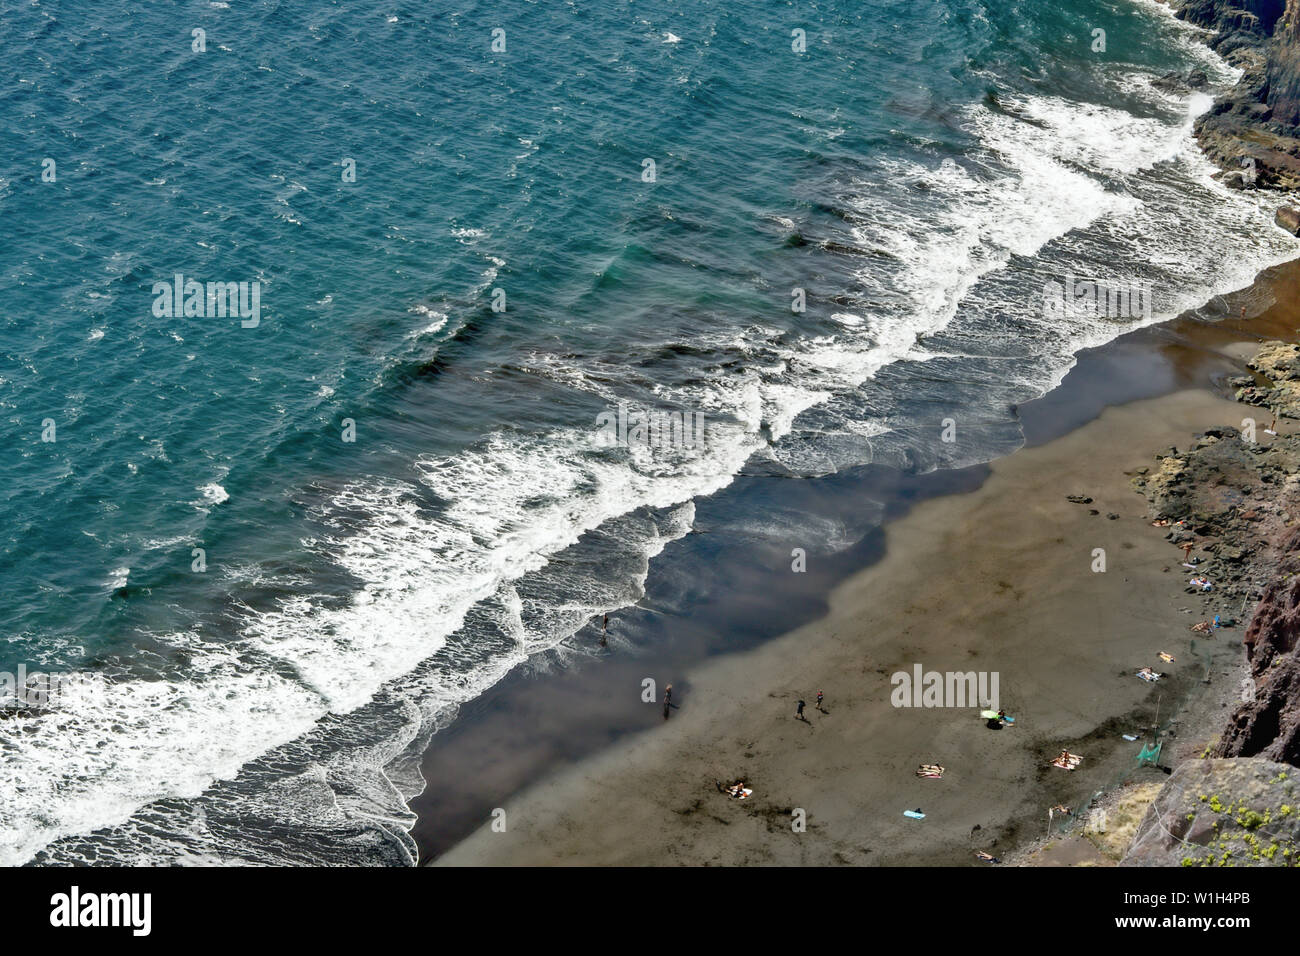 Das türkis-blauen Atlantik mit weißen Wellen in einem diagonalen Schnitt mit einem grauen schönen Strand von weit oben fotografiert. Auf Teneriffa in Igueste de San Stockfoto